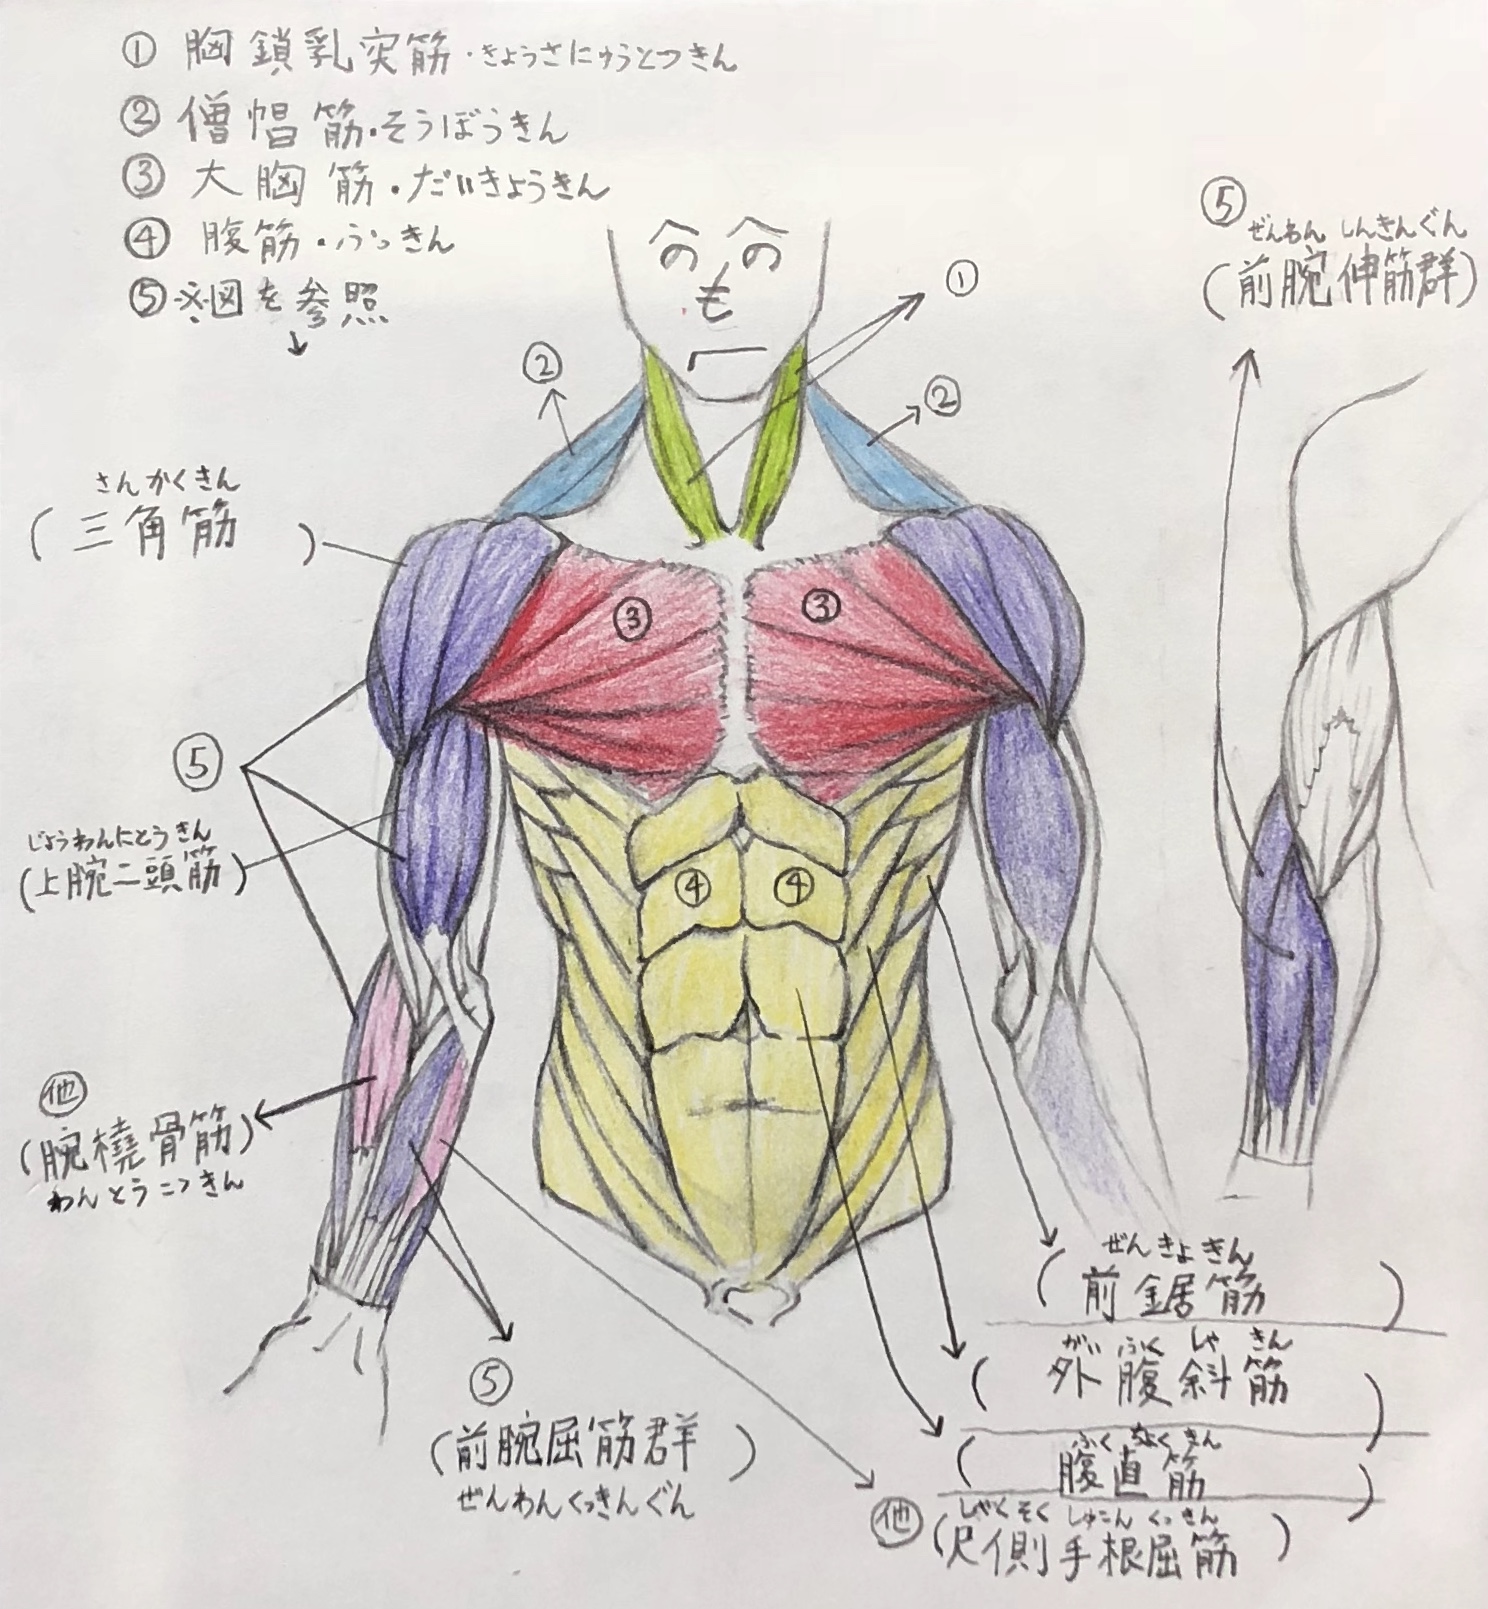 画家が解説 上半身の筋肉の描き方 ここを抑えれば大丈夫 前身編 Houichi美術絵描き研究所